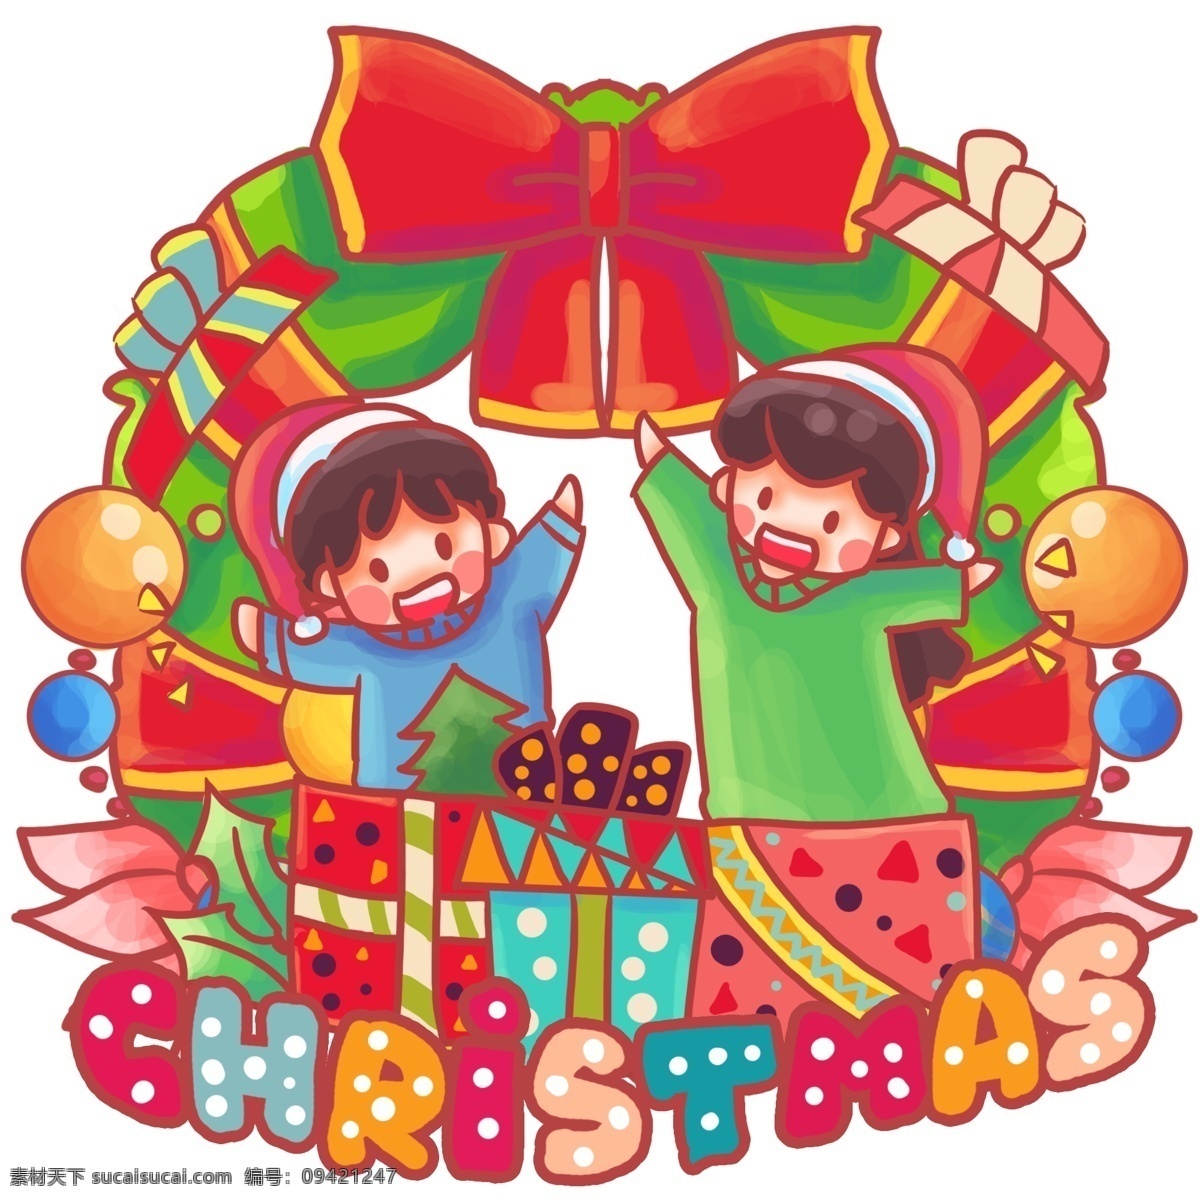 收礼 物 圣诞节 平安夜 开心 打开礼物 礼物堆 礼品 戴 圣诞 帽 小人 卡通 可爱 萌 过节 下雪 圣诞树 12月25日 耶稣 节日 快乐 假期 假日 杉树